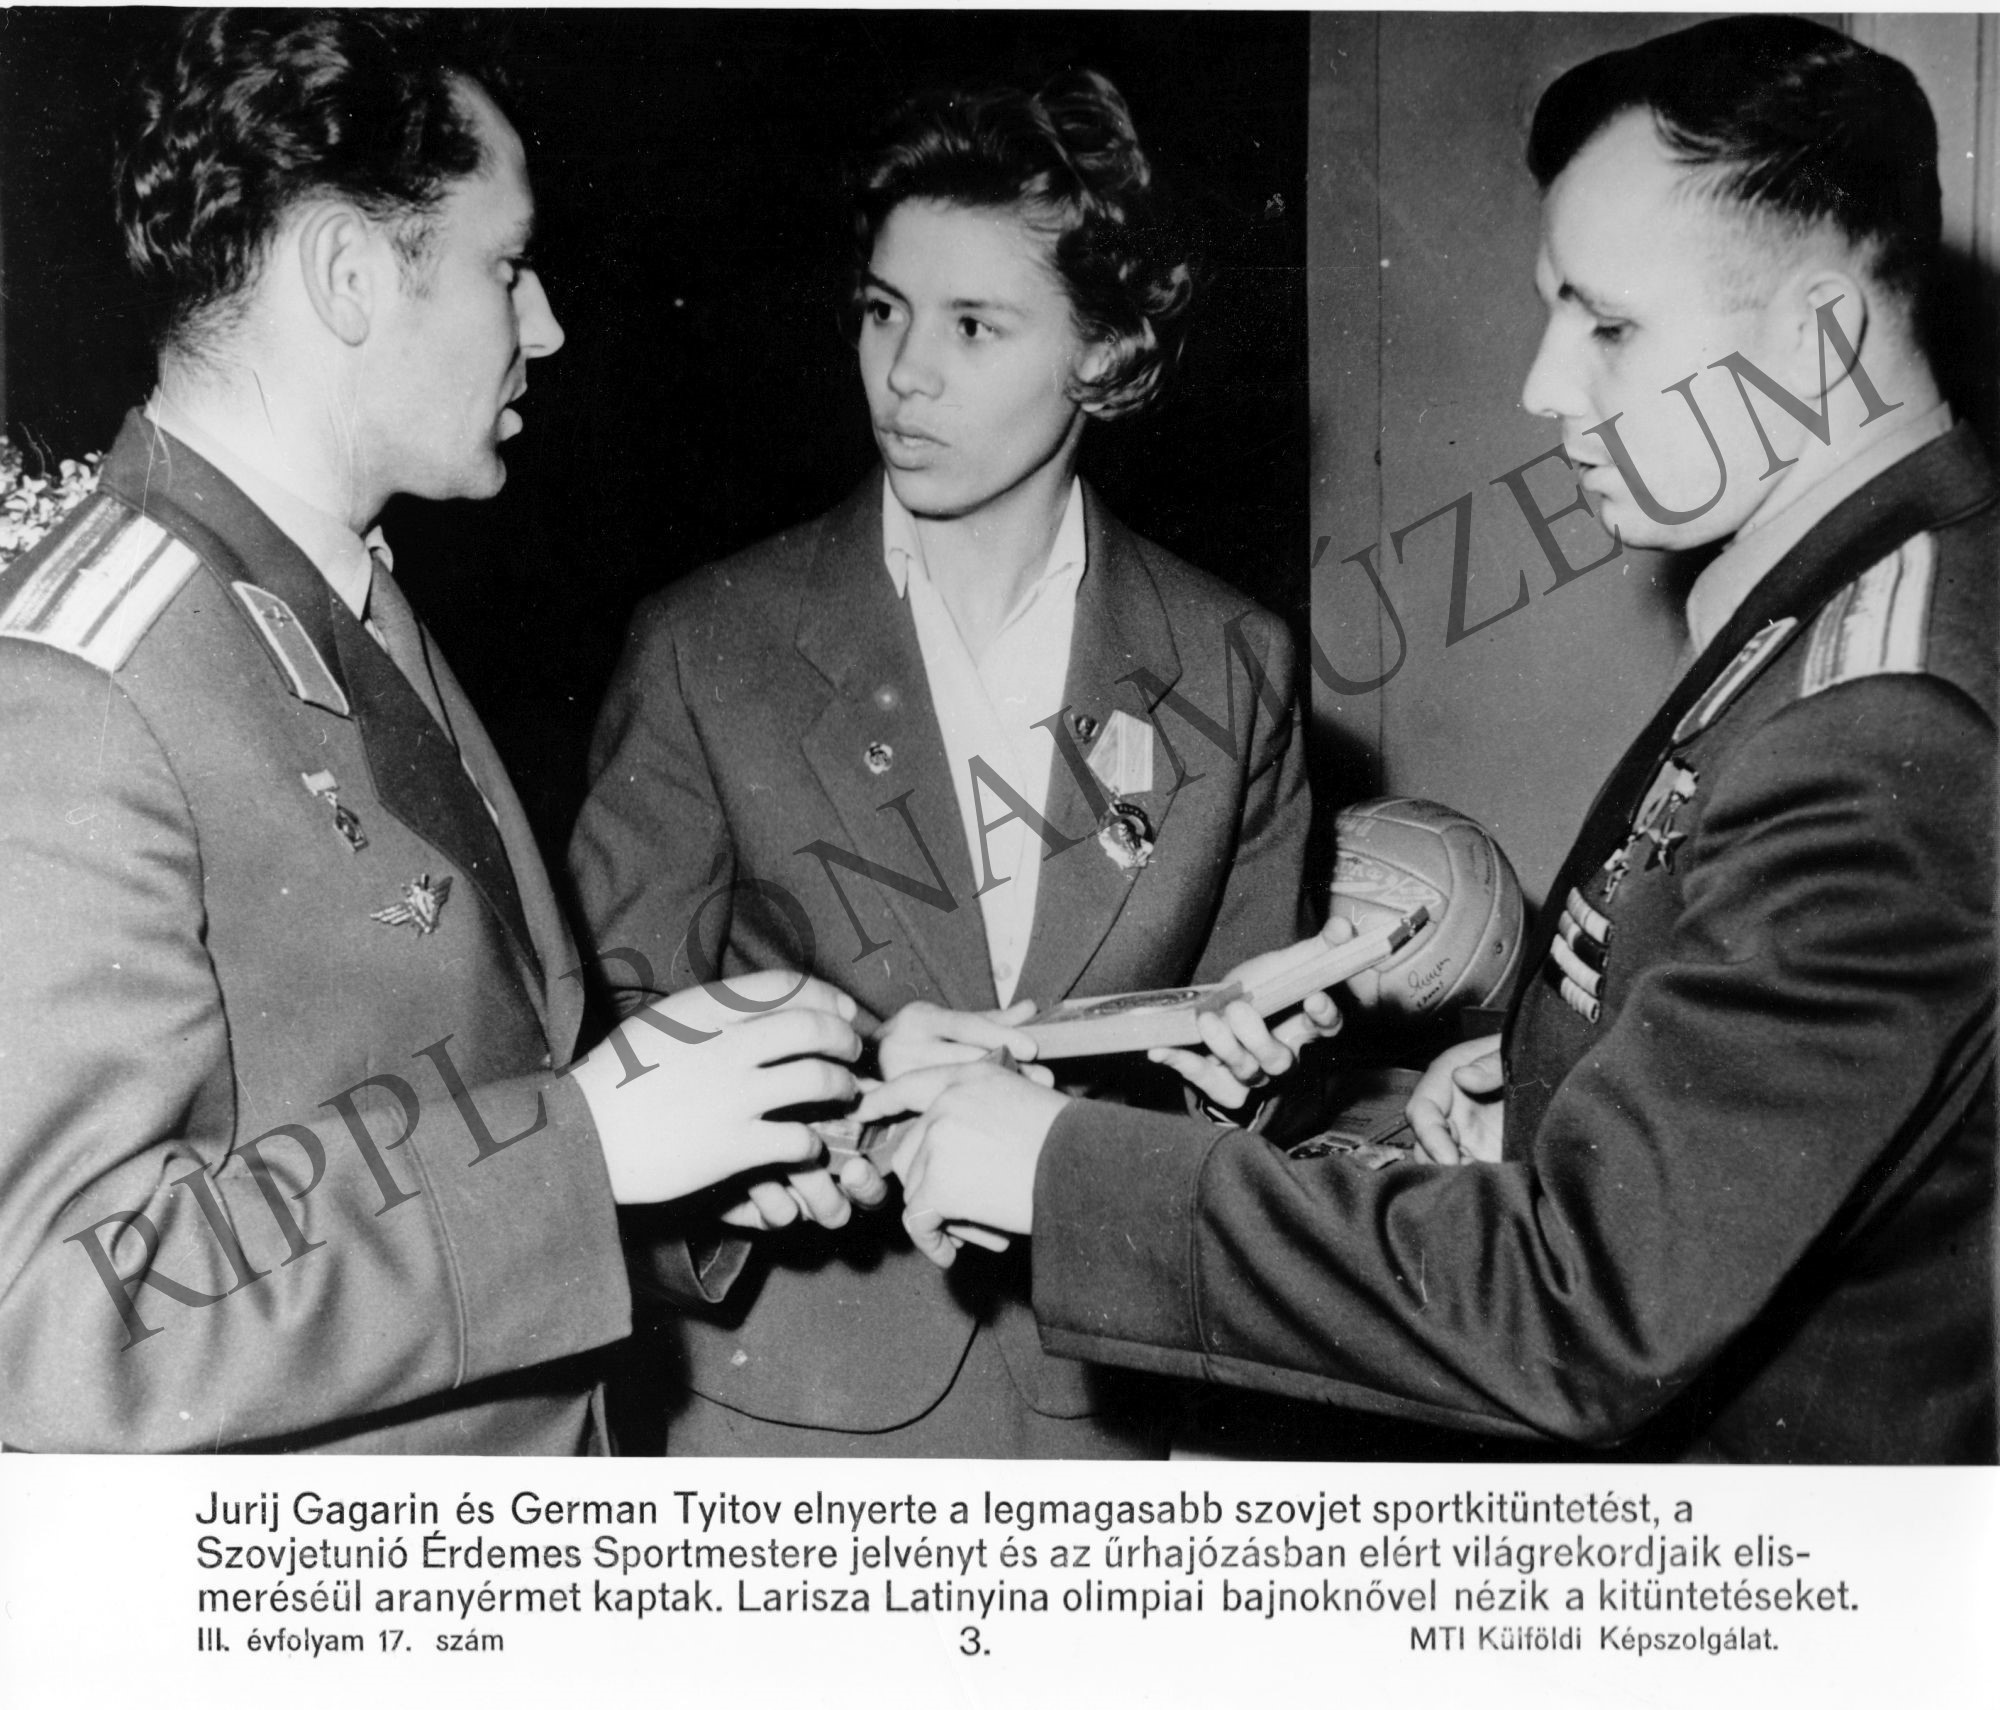 Jurij Gagarin és German Tyitov teljesítményéért a legmagasabb szovjet sportkitüntetést, a Szovjetunió Érdemes Sportmestere jelvényt kapta (Rippl-Rónai Múzeum CC BY-NC-SA)